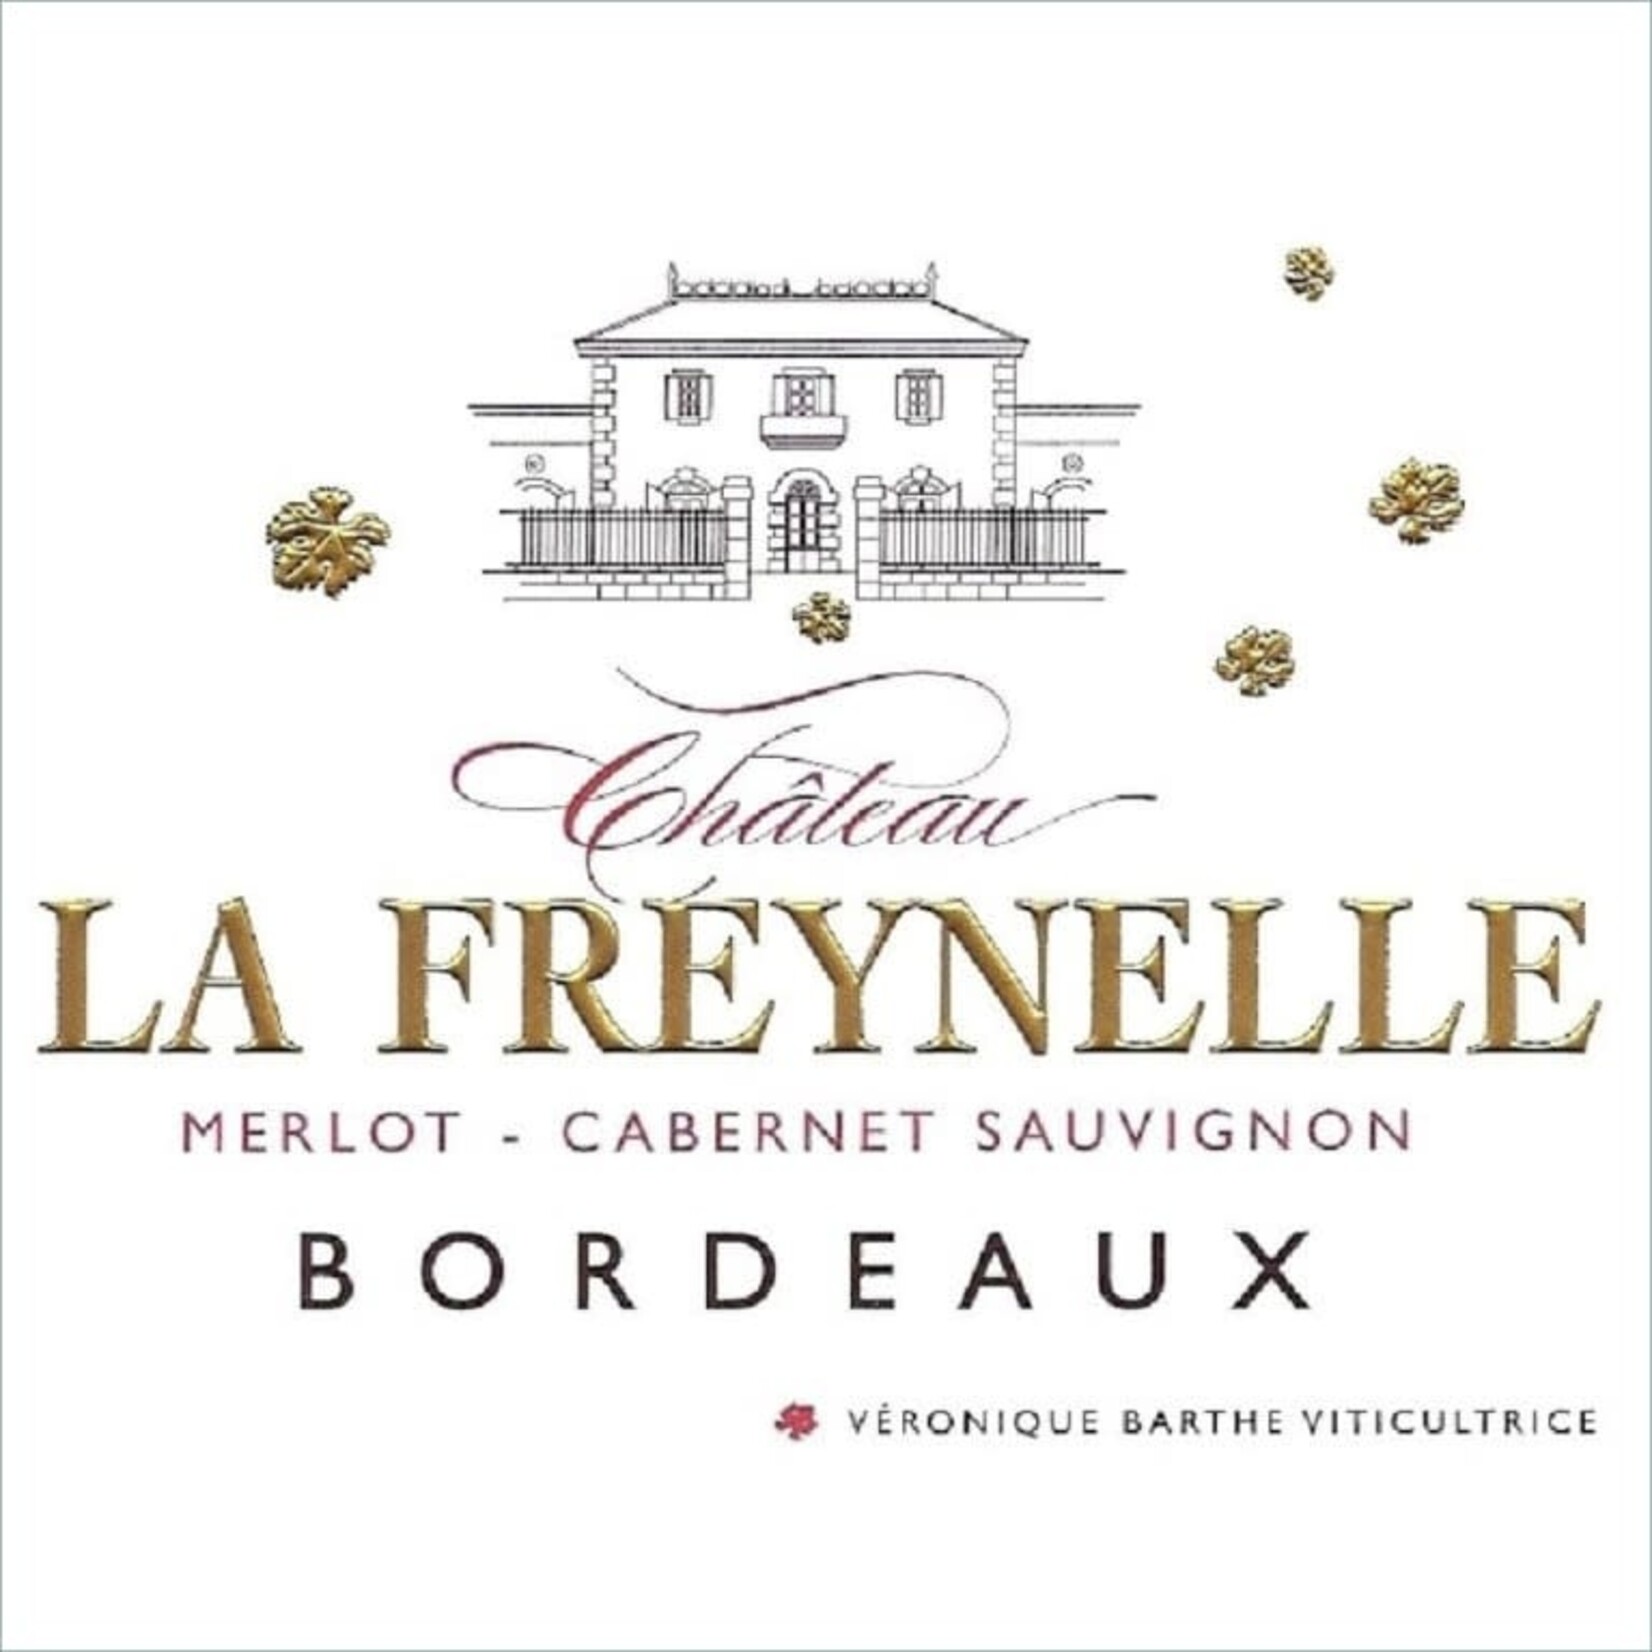 Château La Freynelle Chateau La Freynelle Cabernet Sauvignon 2019 Bordeaux, France